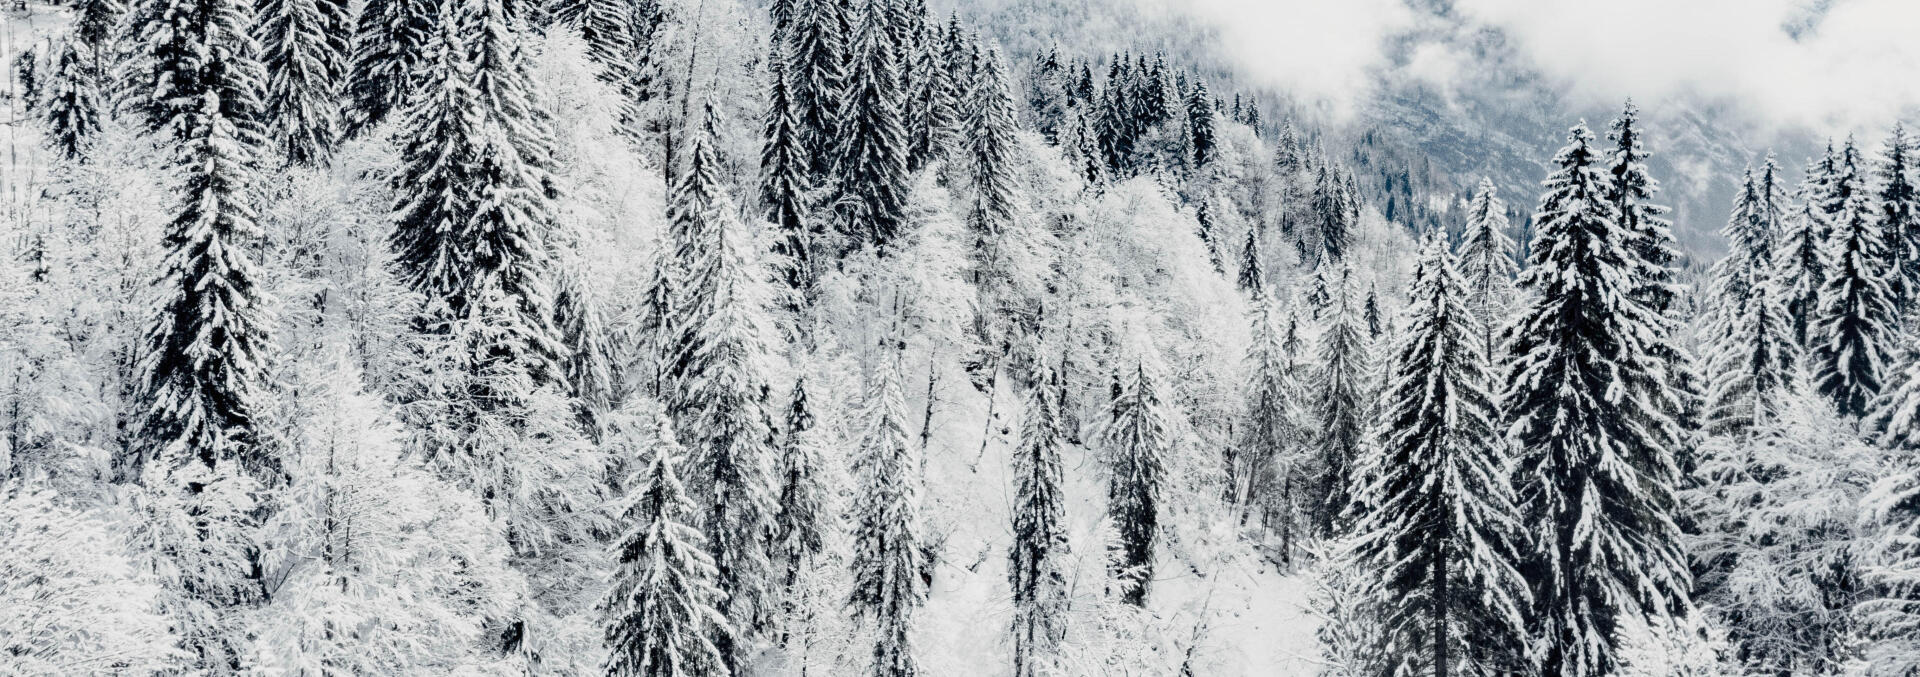 imagem de uma floresta coberta de neve